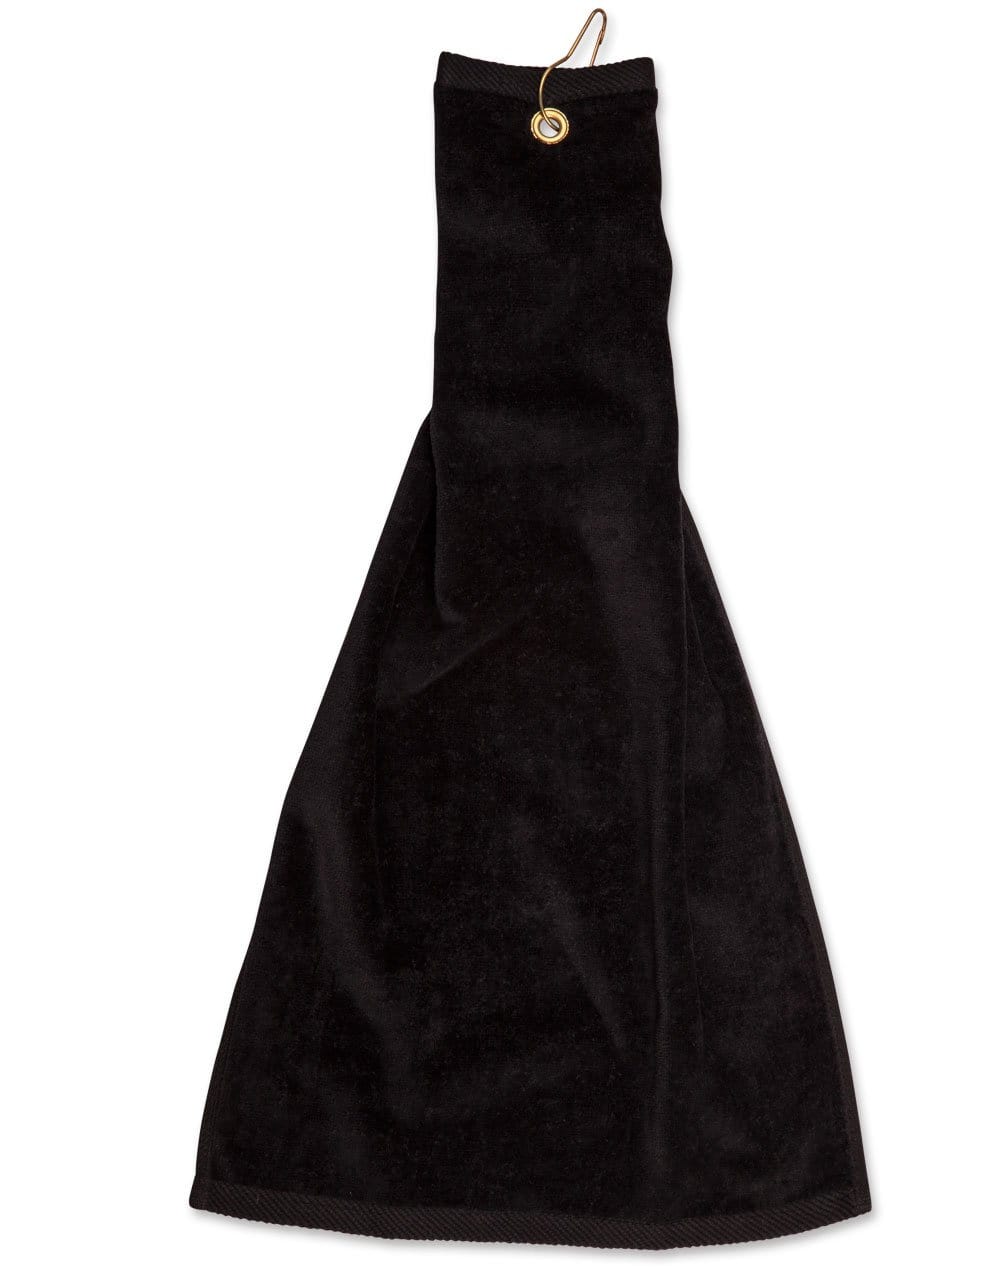 Golf Towel With Ring & Hook TW01A Work Wear Australian Industrial Wear 38 x 65 cm Black 